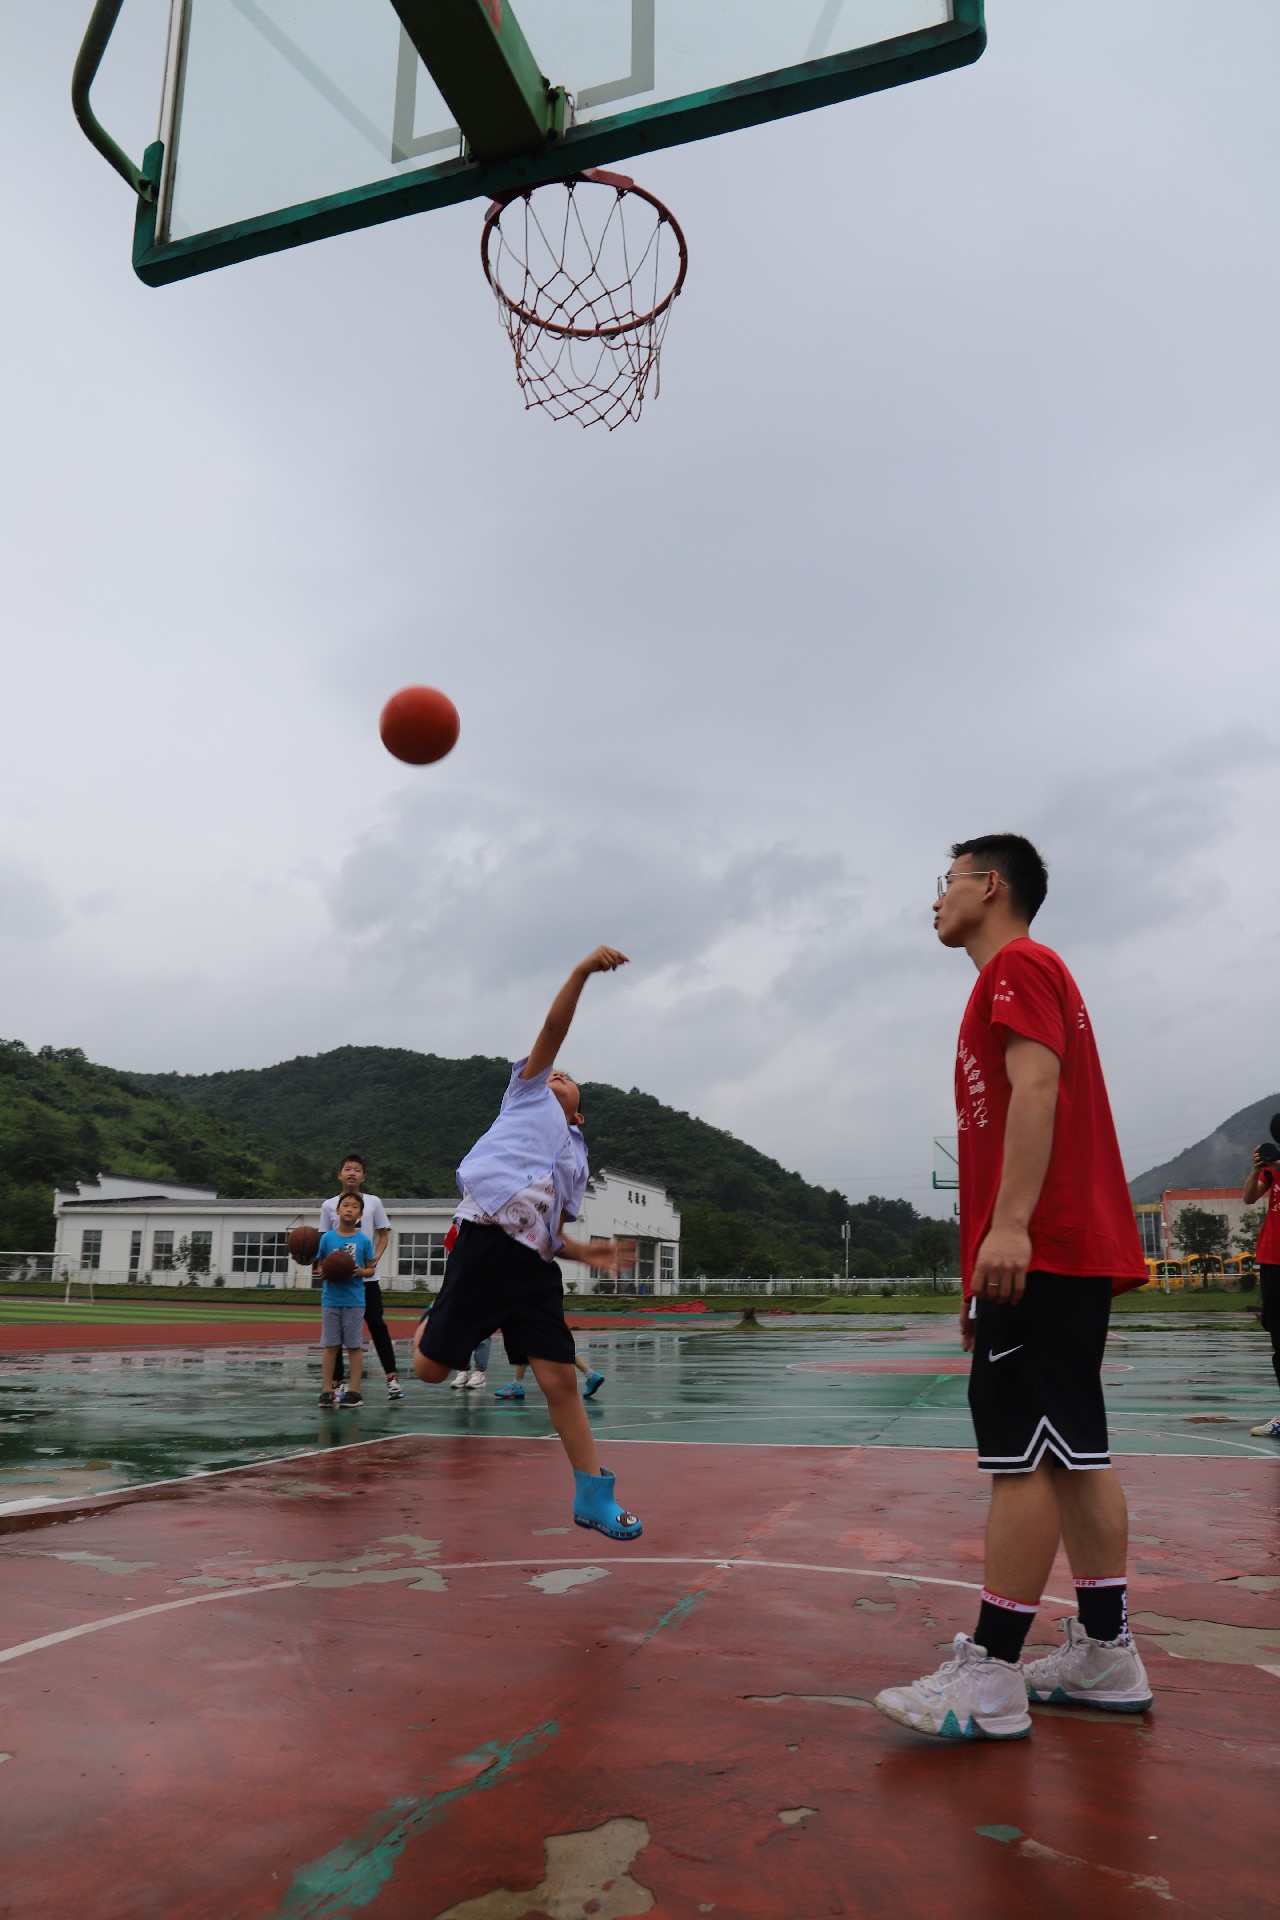 安徽师大体院学子再访溪口:一颗篮球一个梦,一番拼搏凝精神